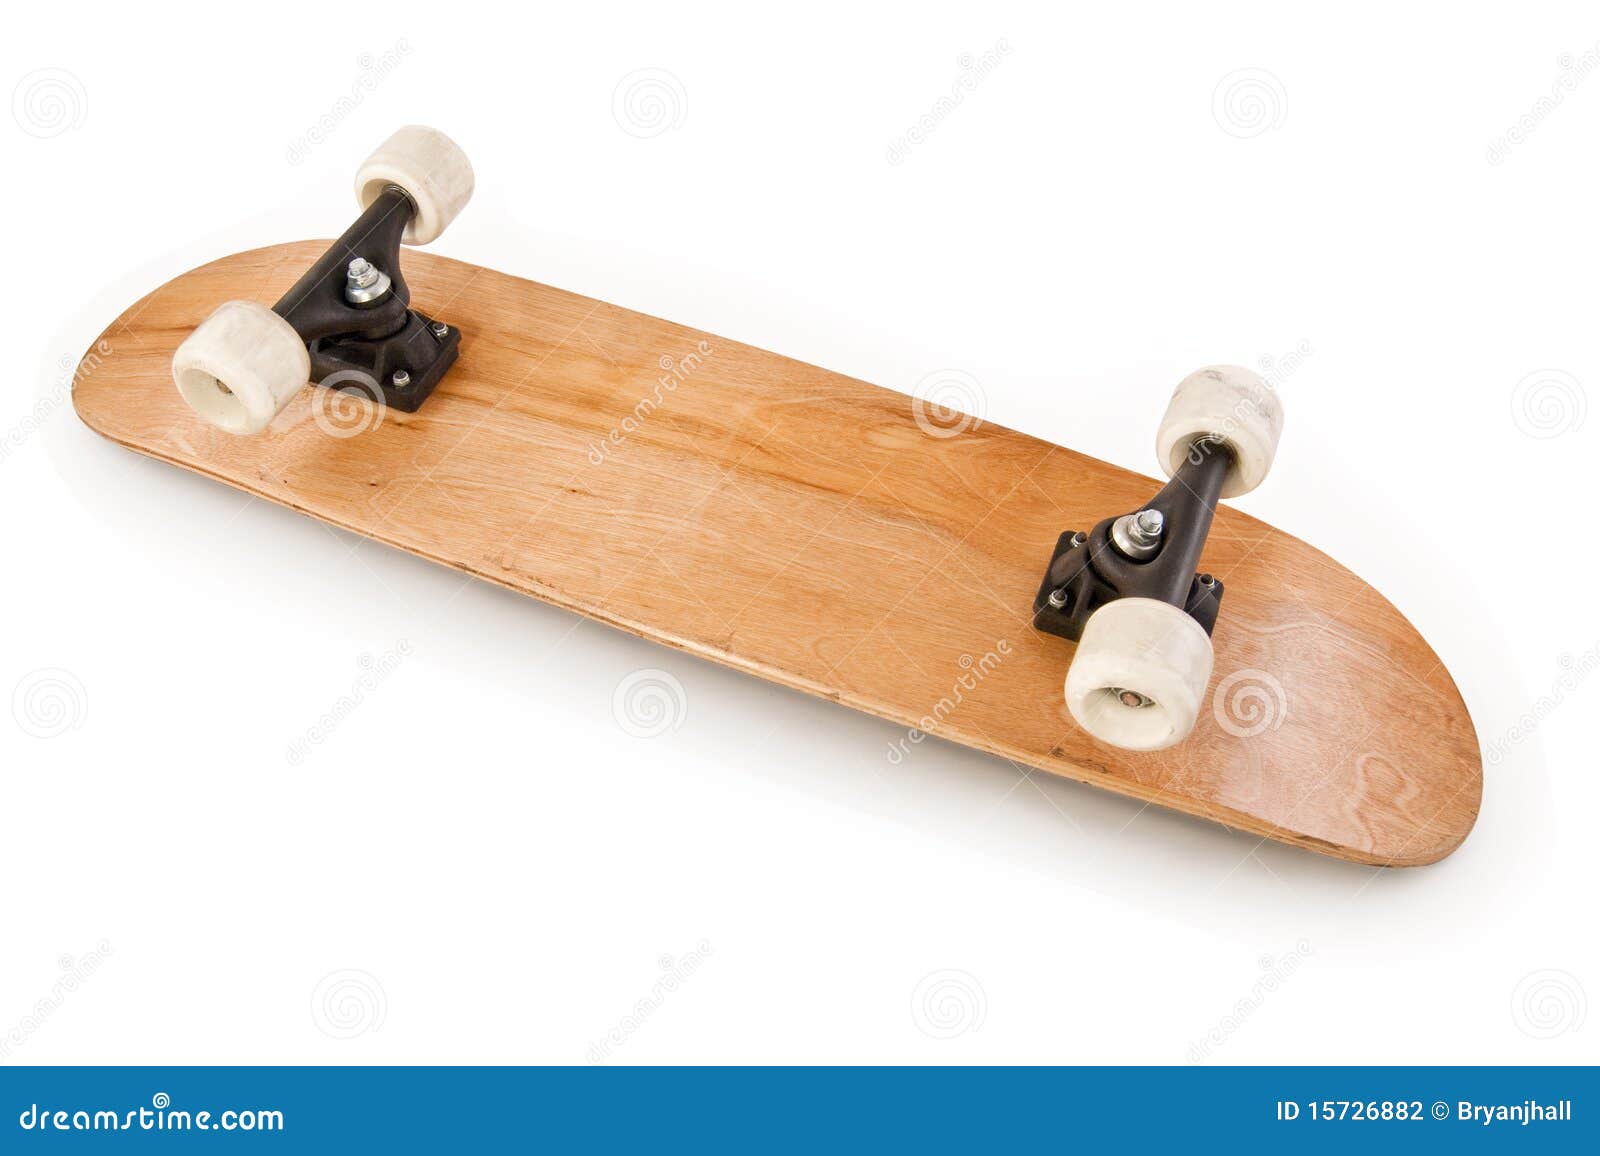 wooden skateboard upside down